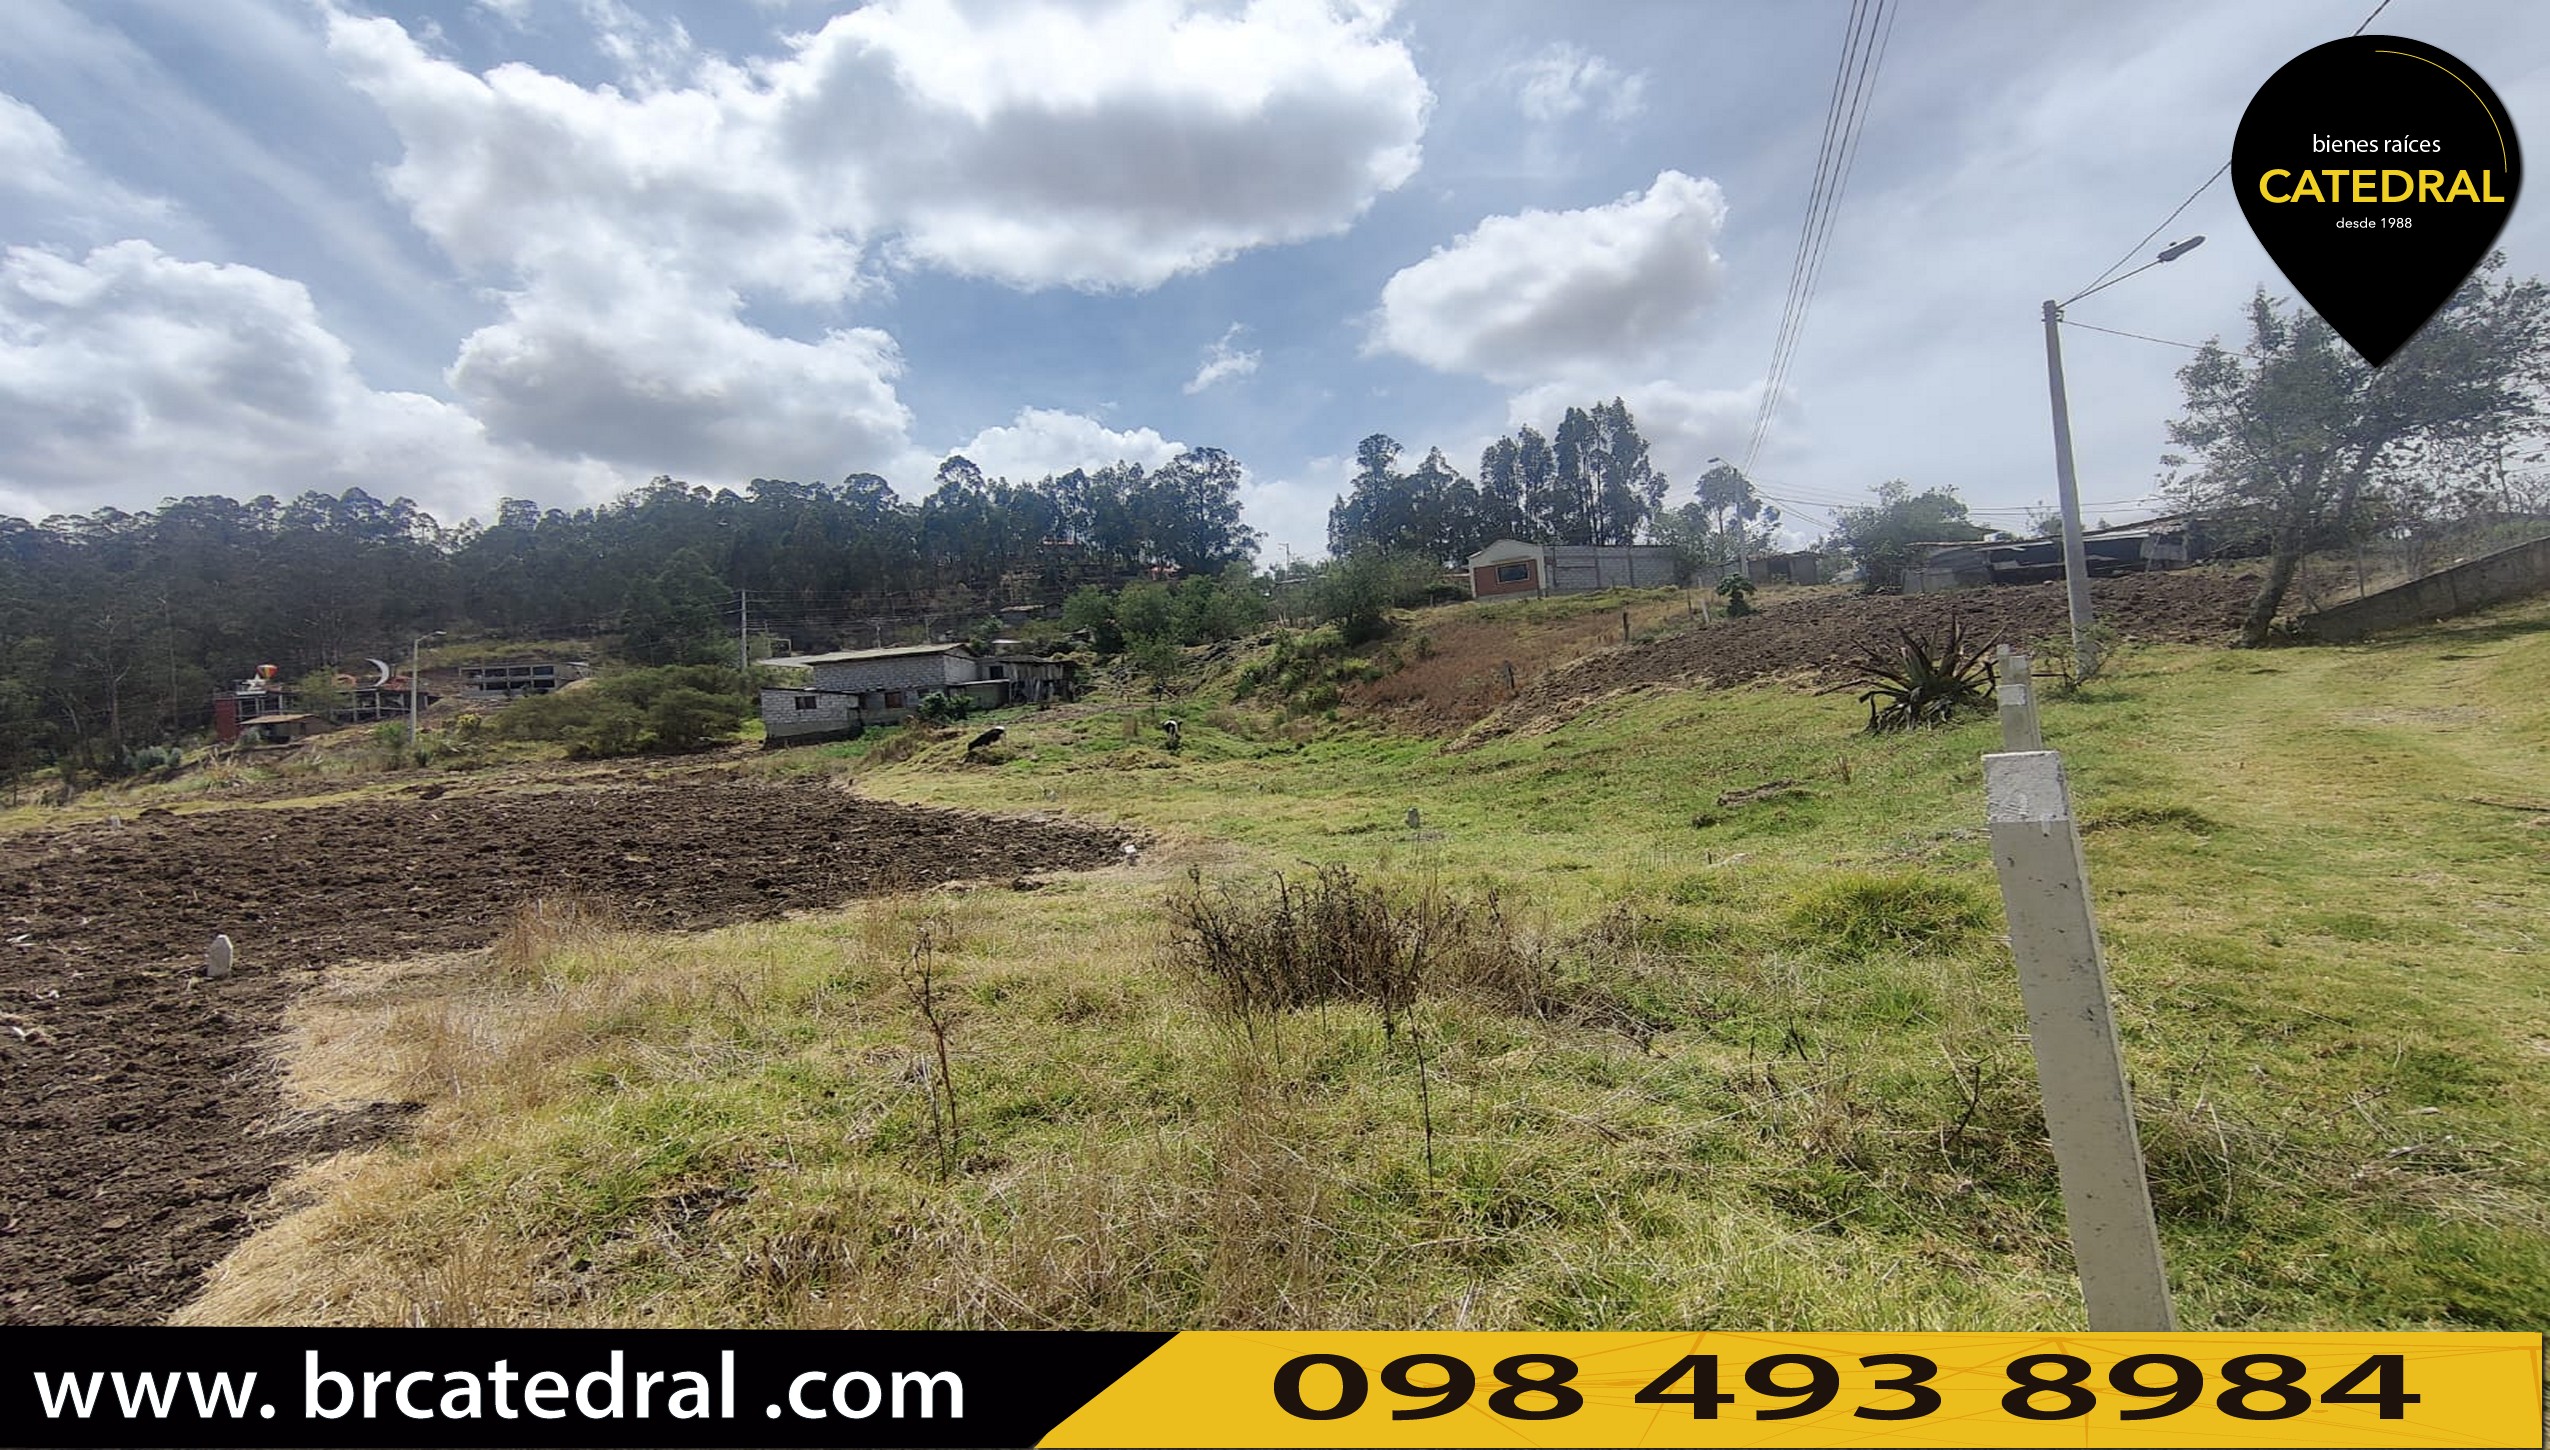 Sitio Solar Terreno de Venta en Cuenca Ecuador sector San Miguel